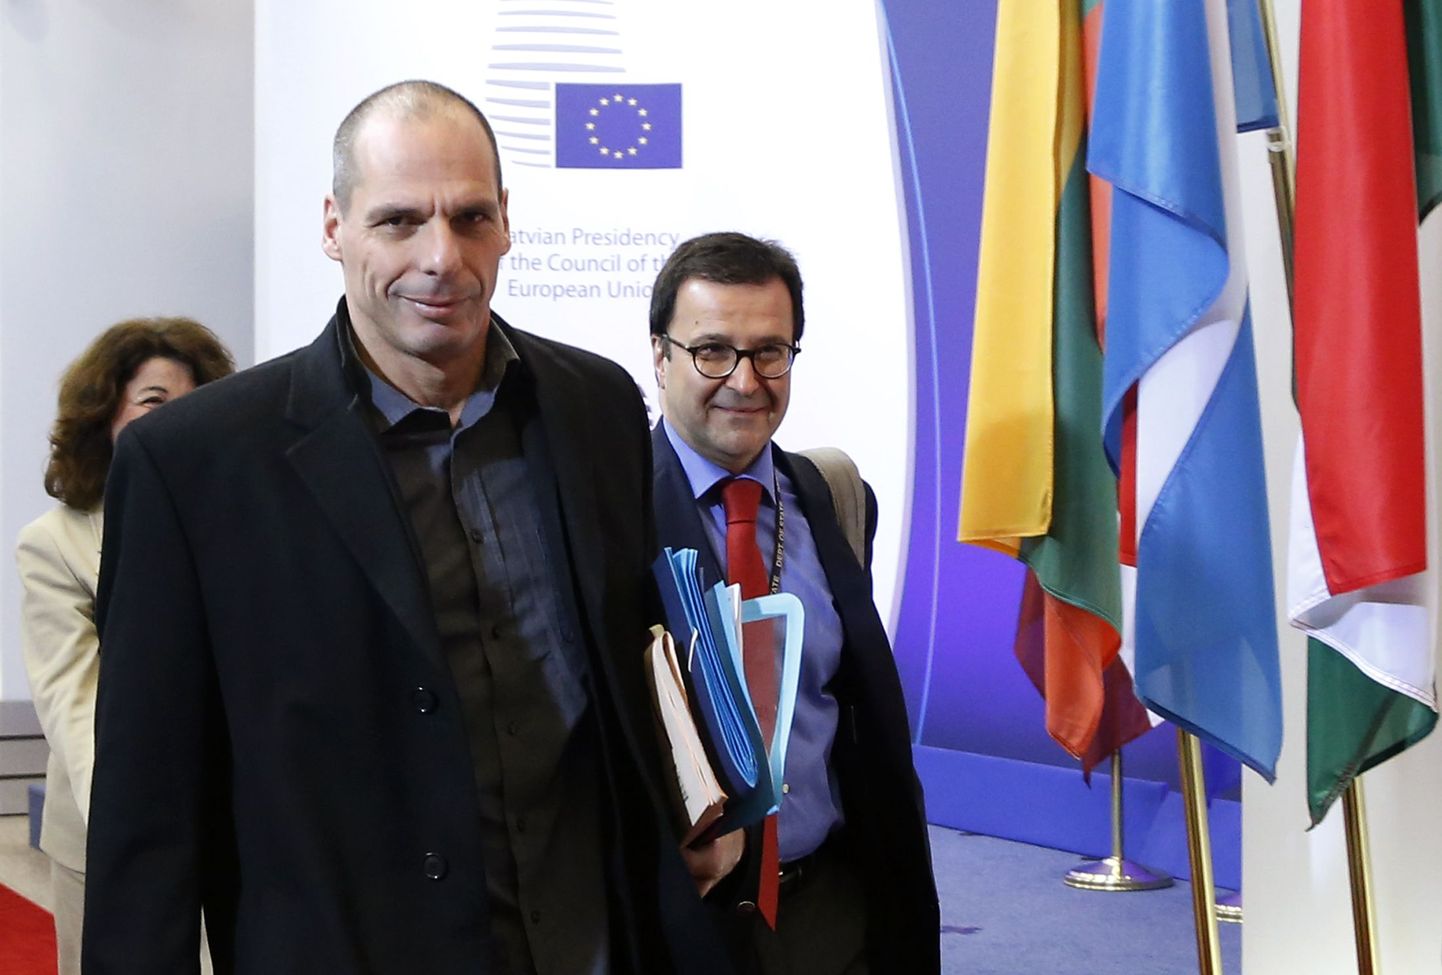 Kreeka rahandusminister Yanis Varoufakis saabumas Euroopa Liidu rahandusministrite kokkusaamisele Brüsselis.